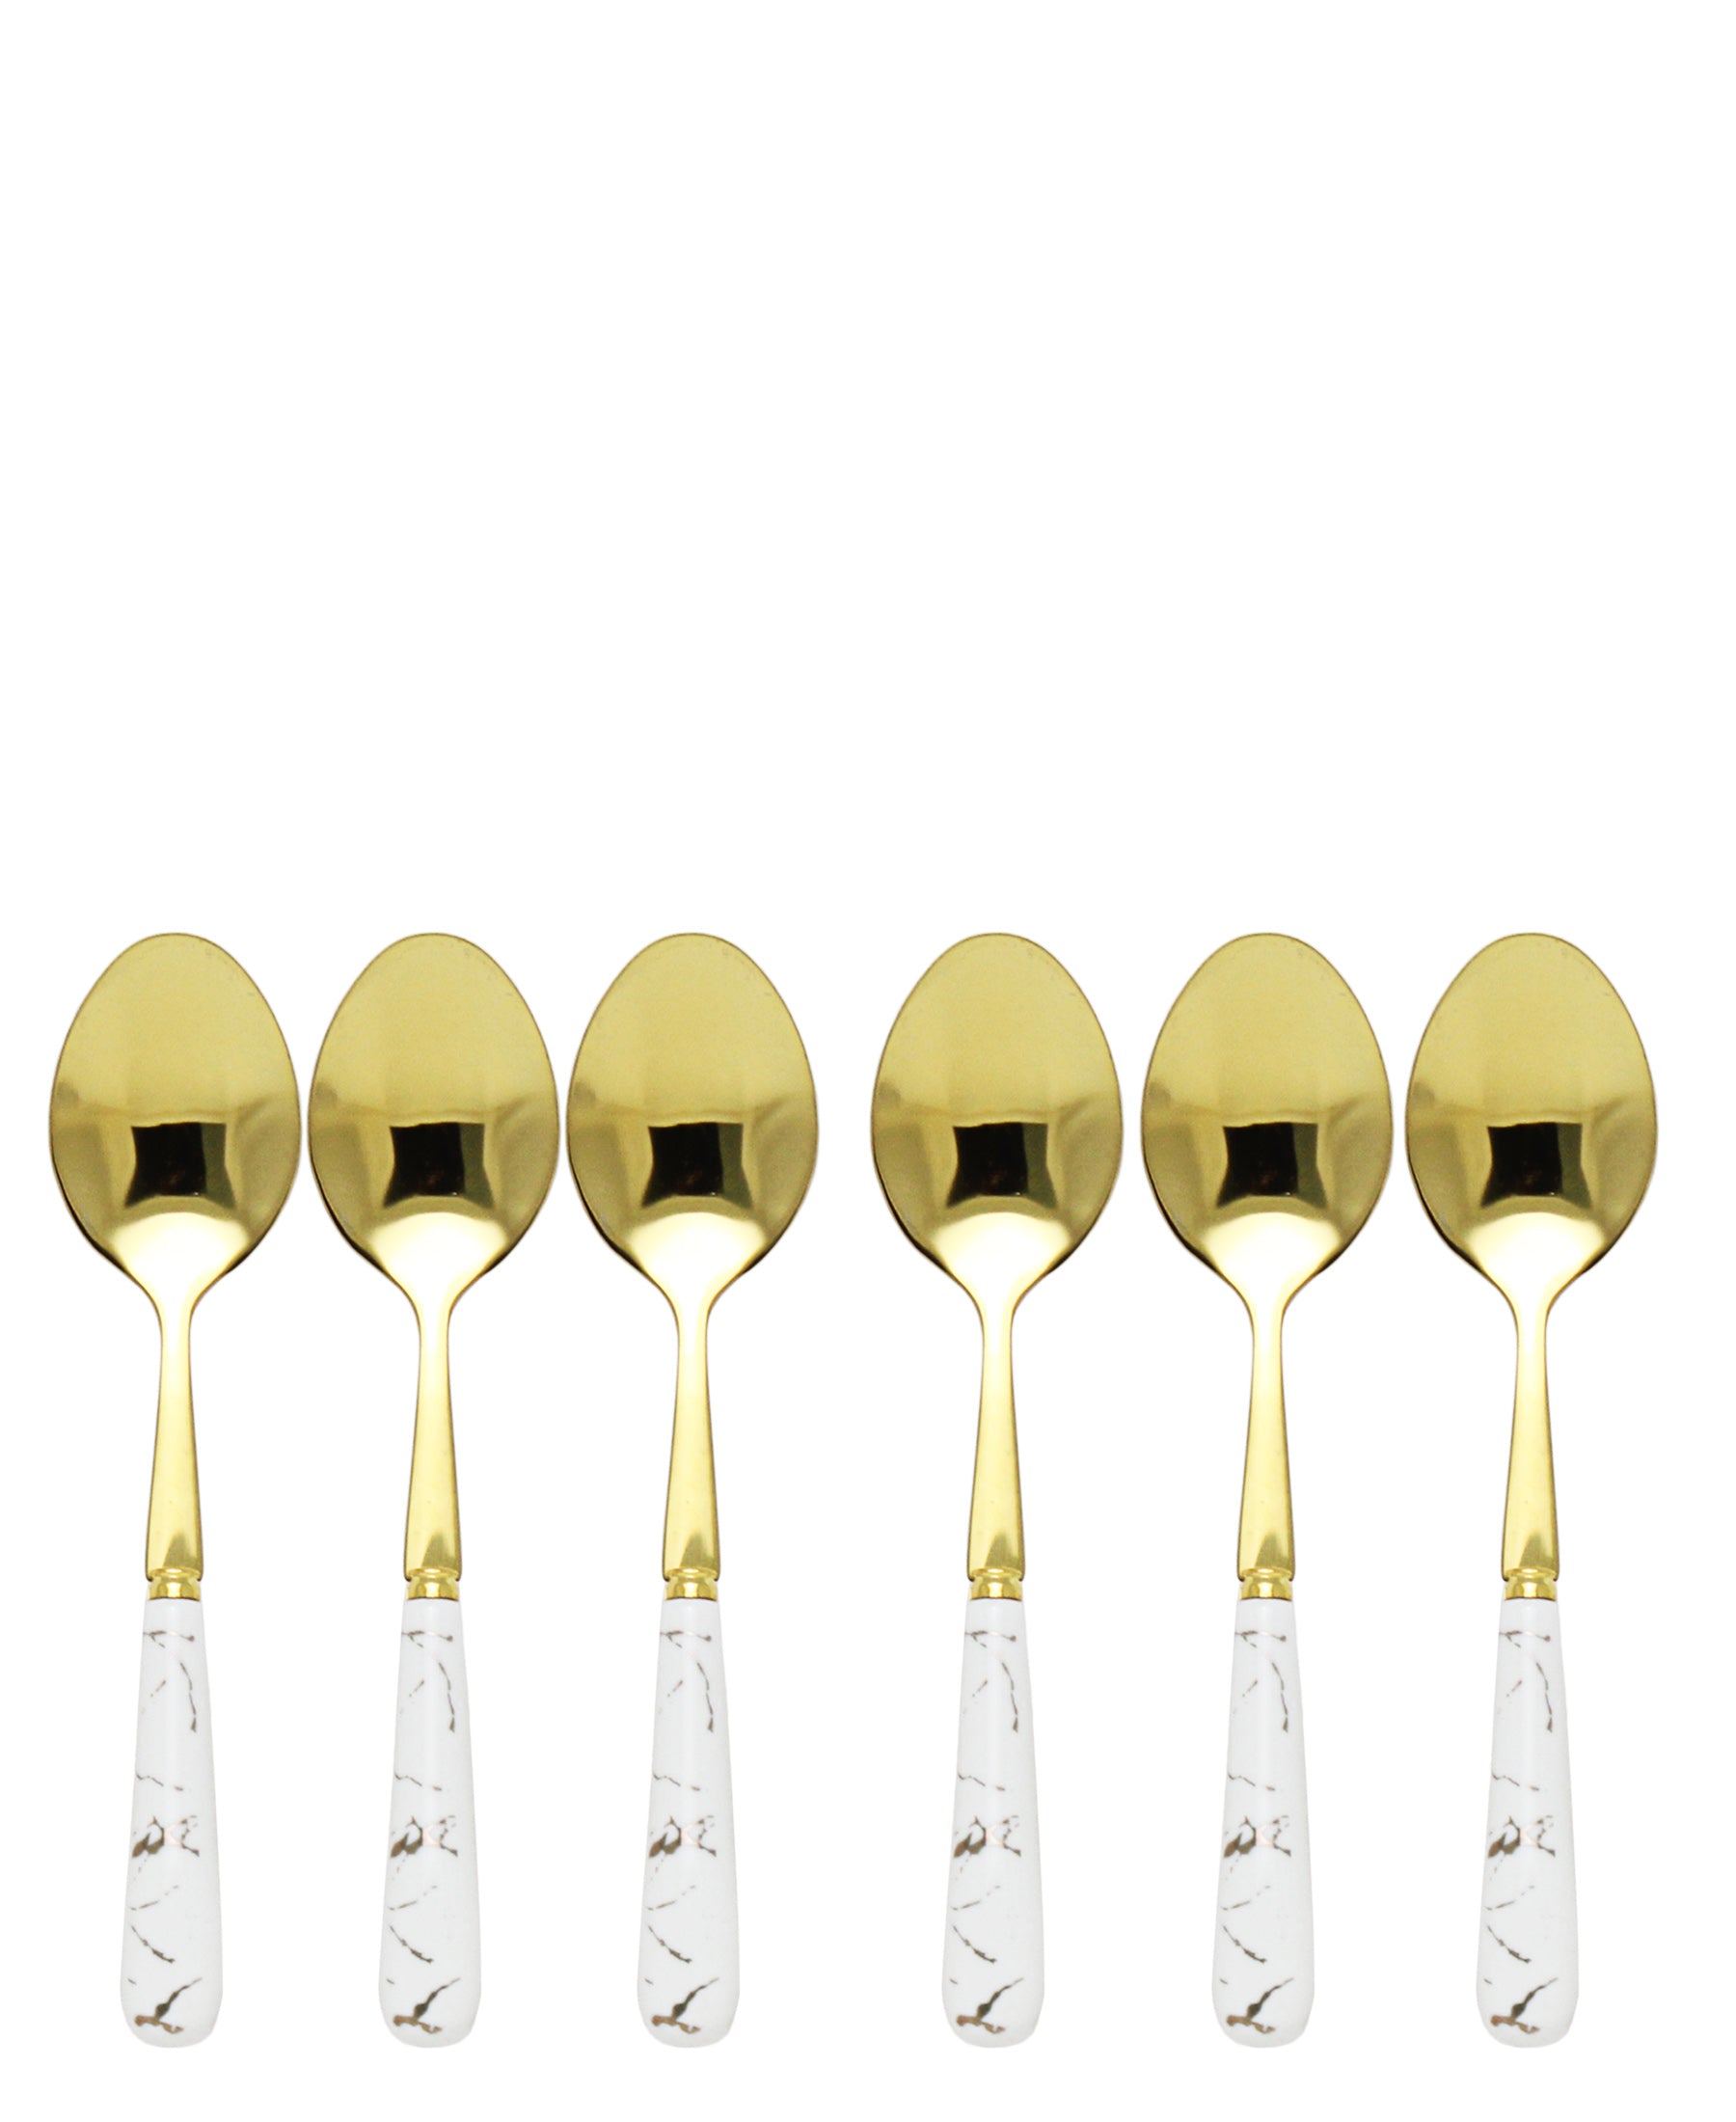 Kitchen Life 6 Piece Golden Spoon Set - White & Gold